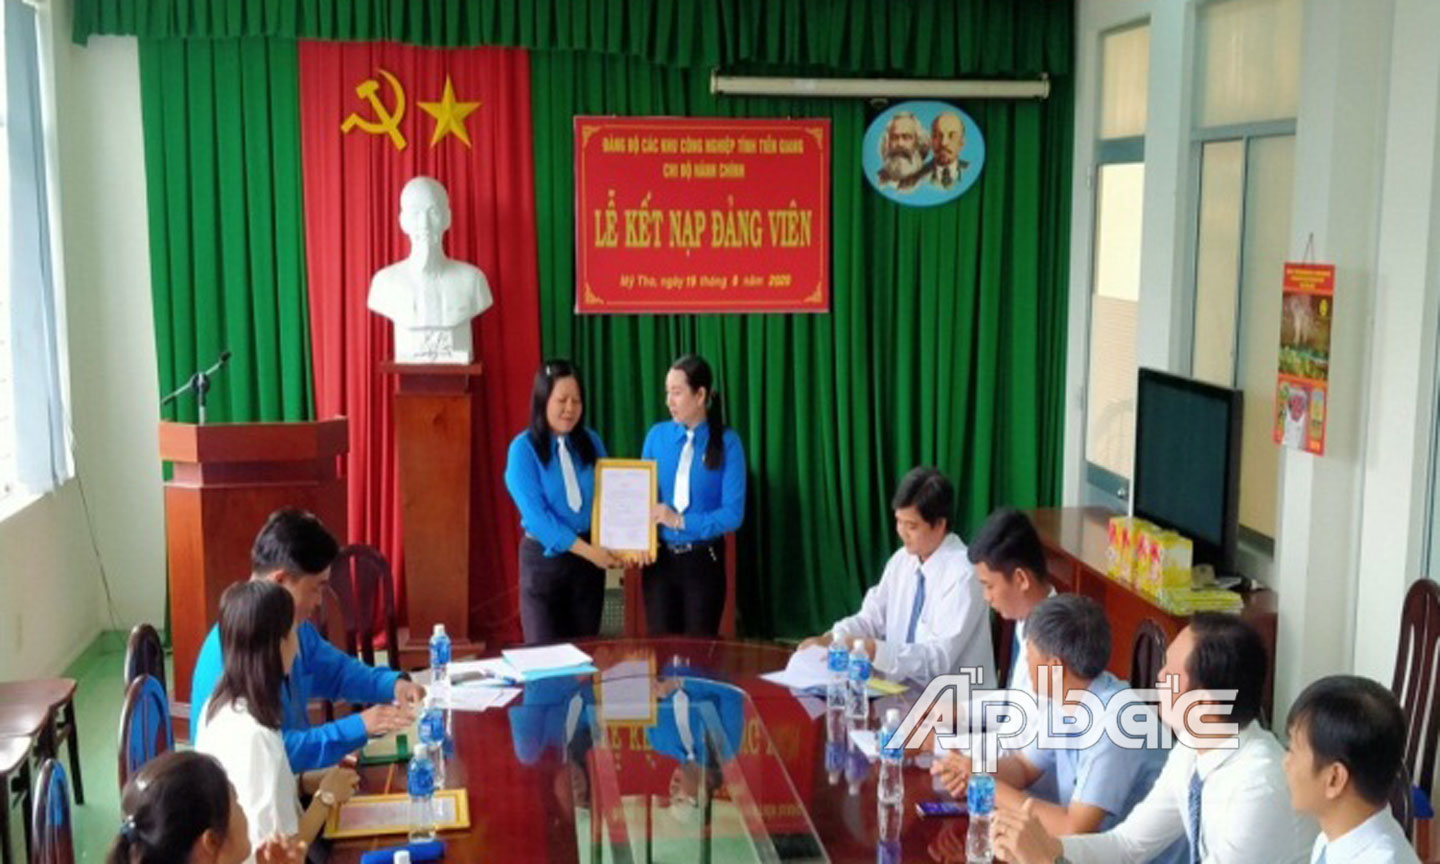 Chi bộ Hành chính, Đảng bộ các Khu công nghiệp tỉnh tổ chức Lễ kết nạp đảng viên.